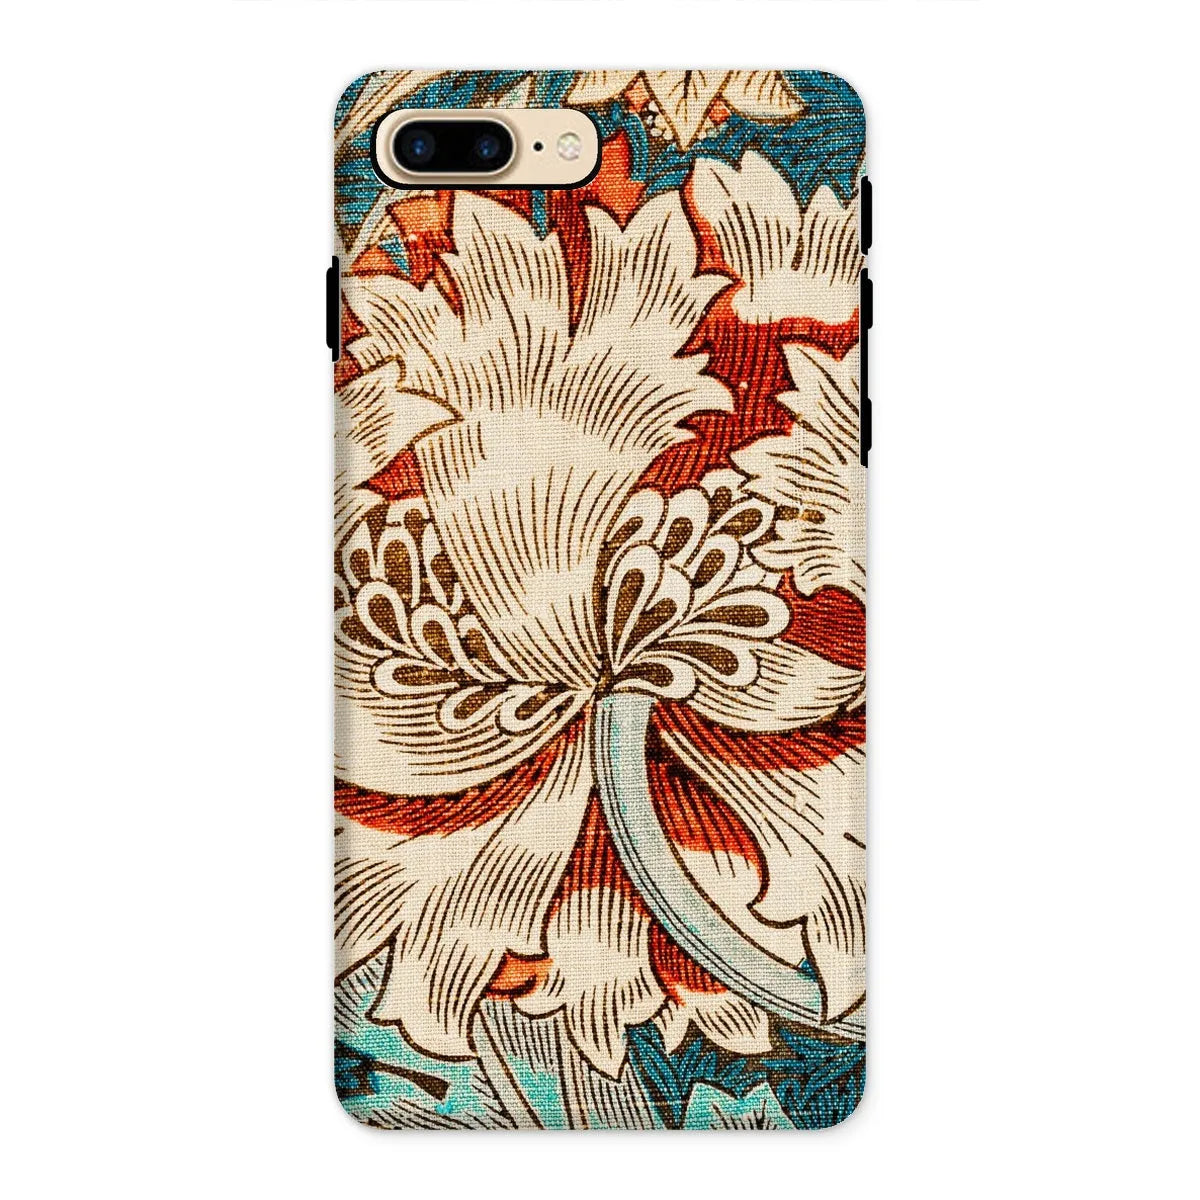 Honeysuckle Too By William Morris Phone Case - Iphone 8 Plus / Matte - Mobile Phone Cases - Aesthetic Art